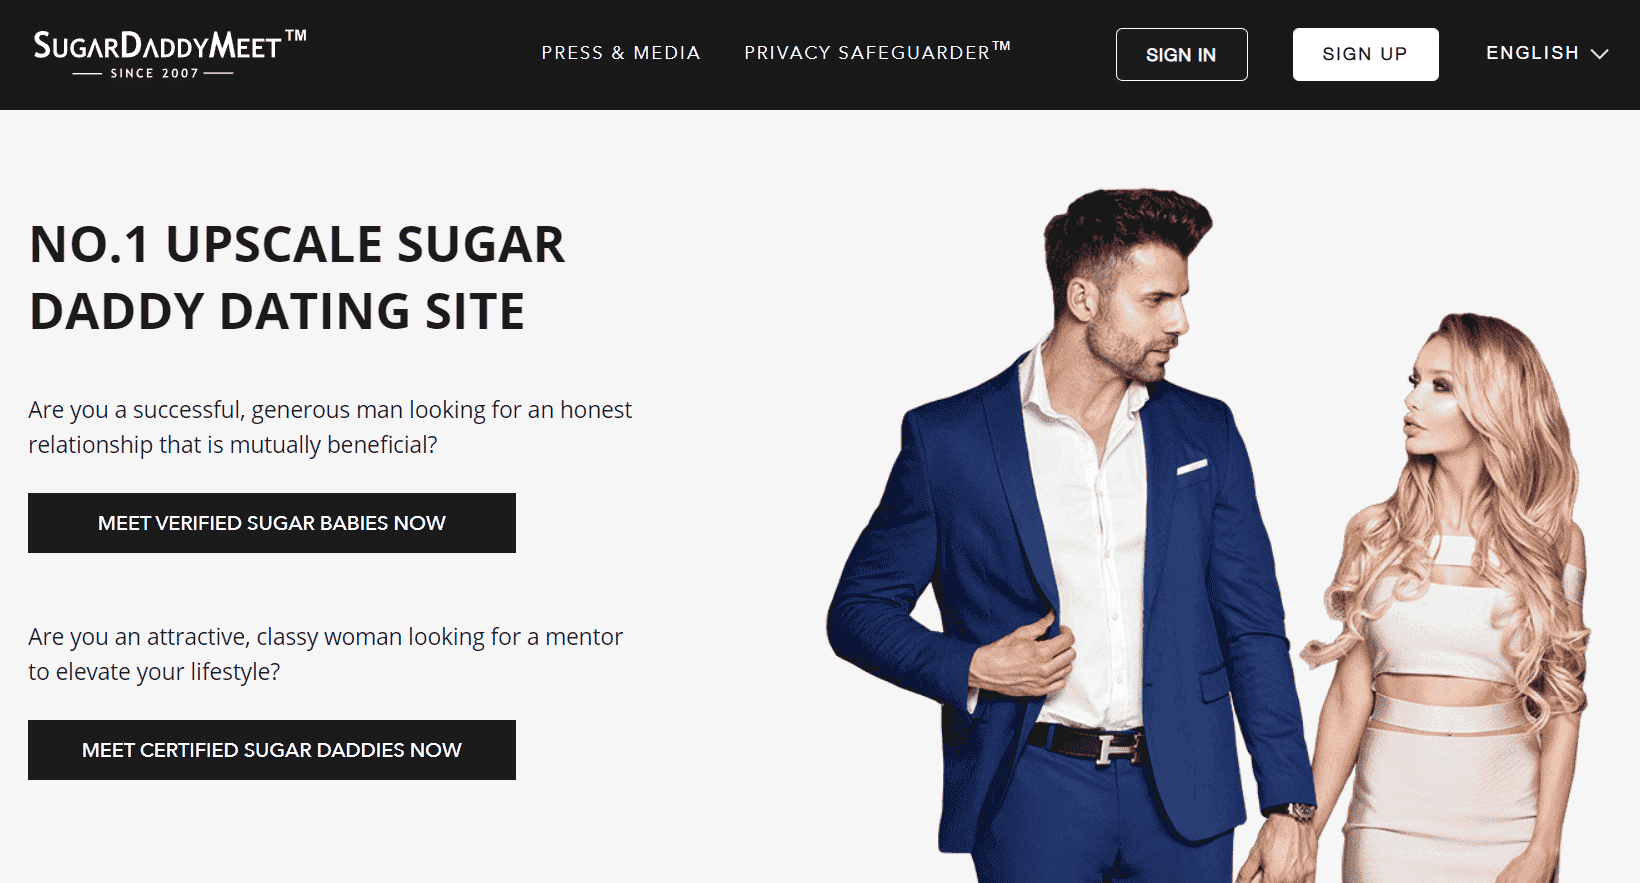 หน้าแรกของเว็บไซต์ SugarDaddyMeet